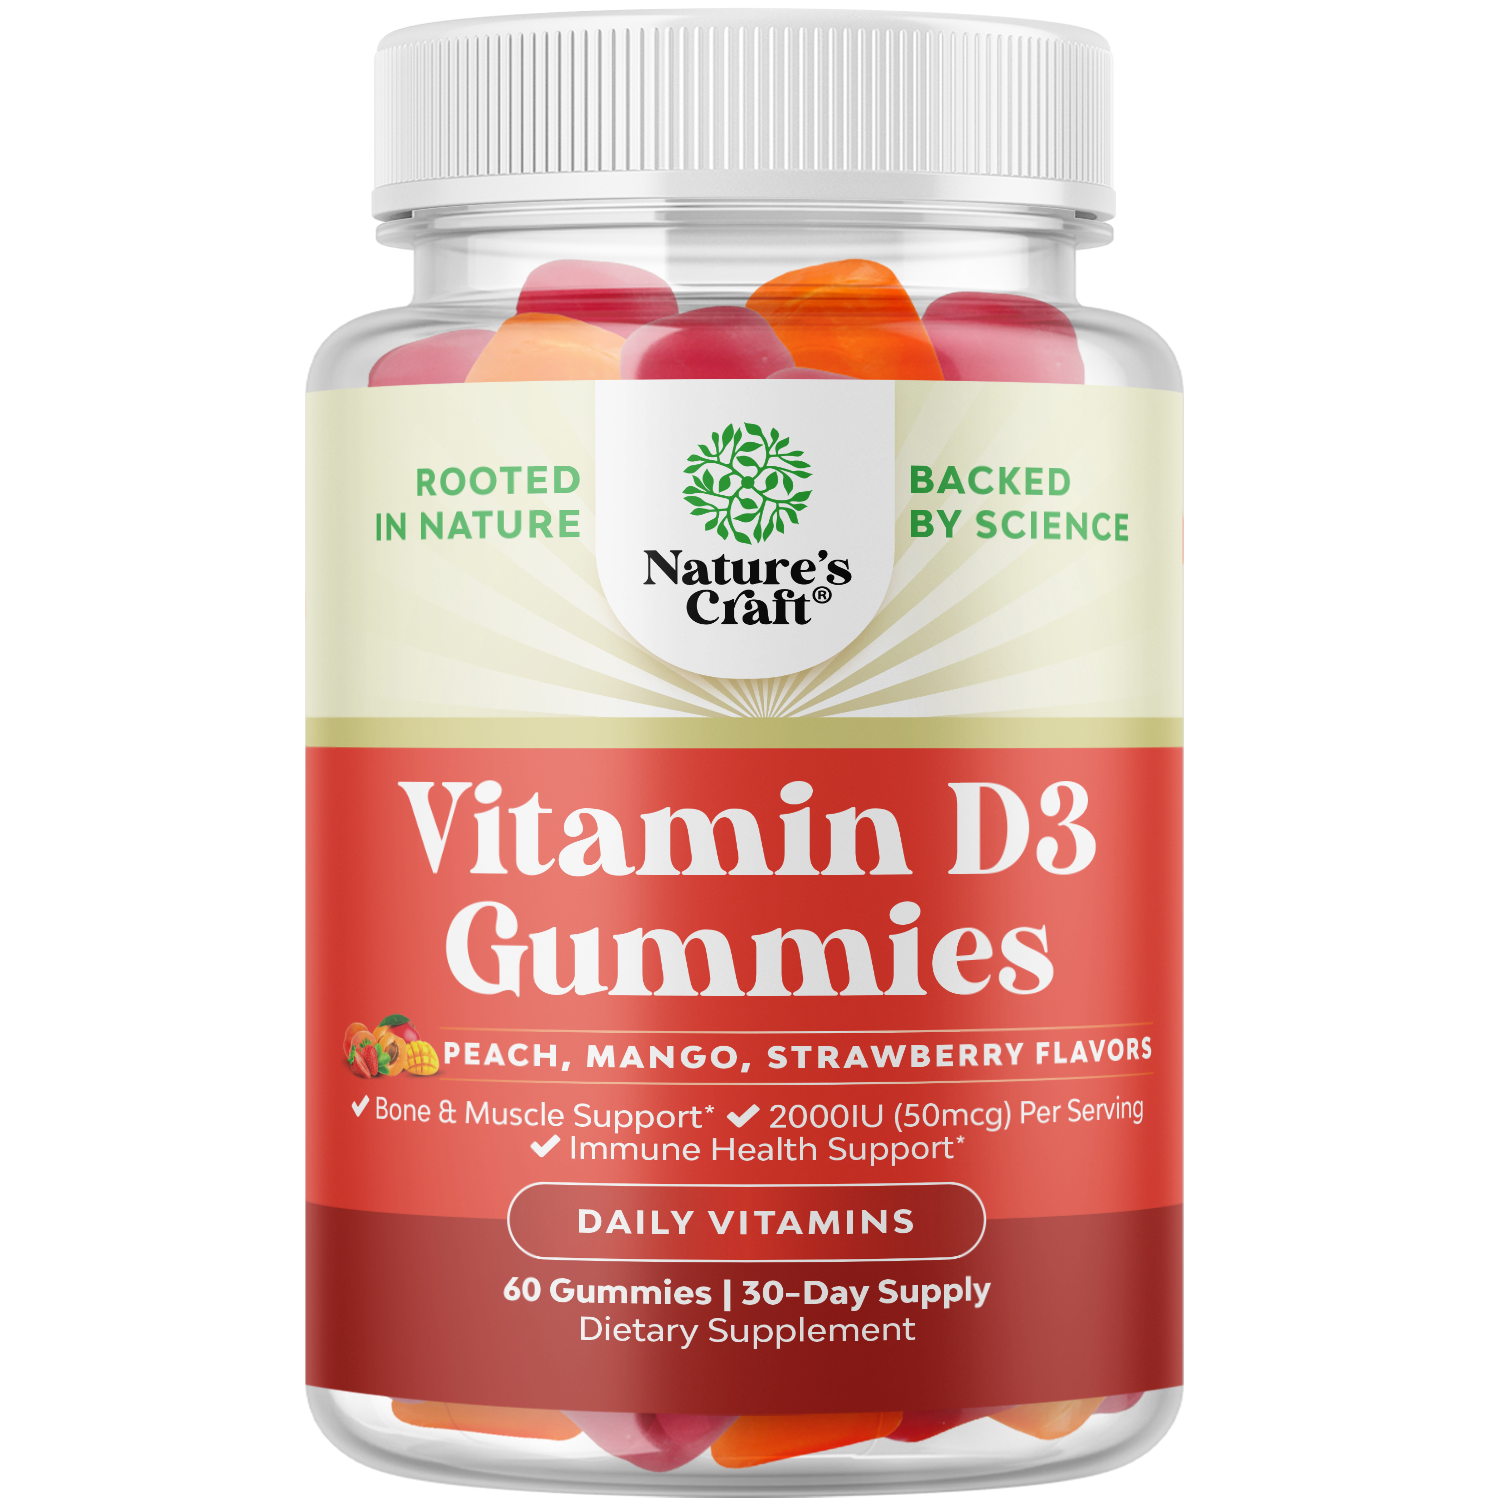 Vitamin D3 Gummies 2000IU per serving